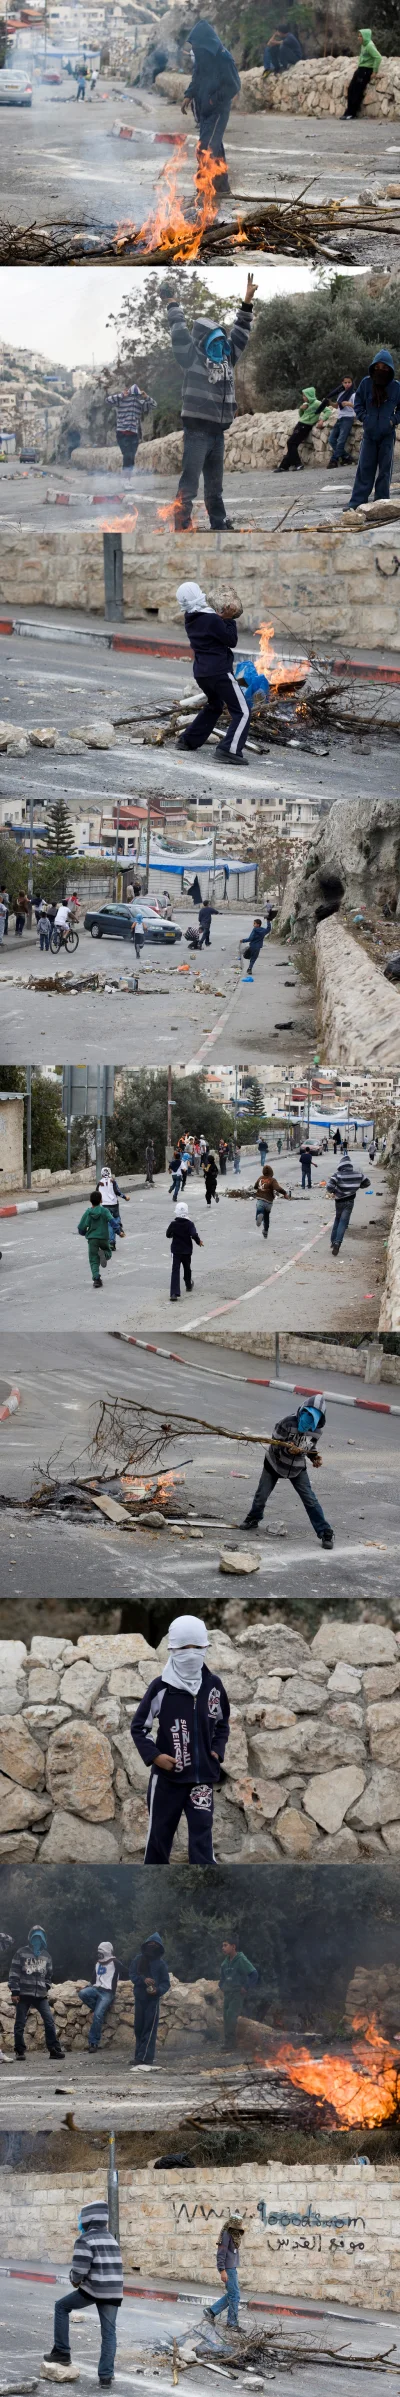 l-da - zamieszki z udziałem nieletnich w #palestyna